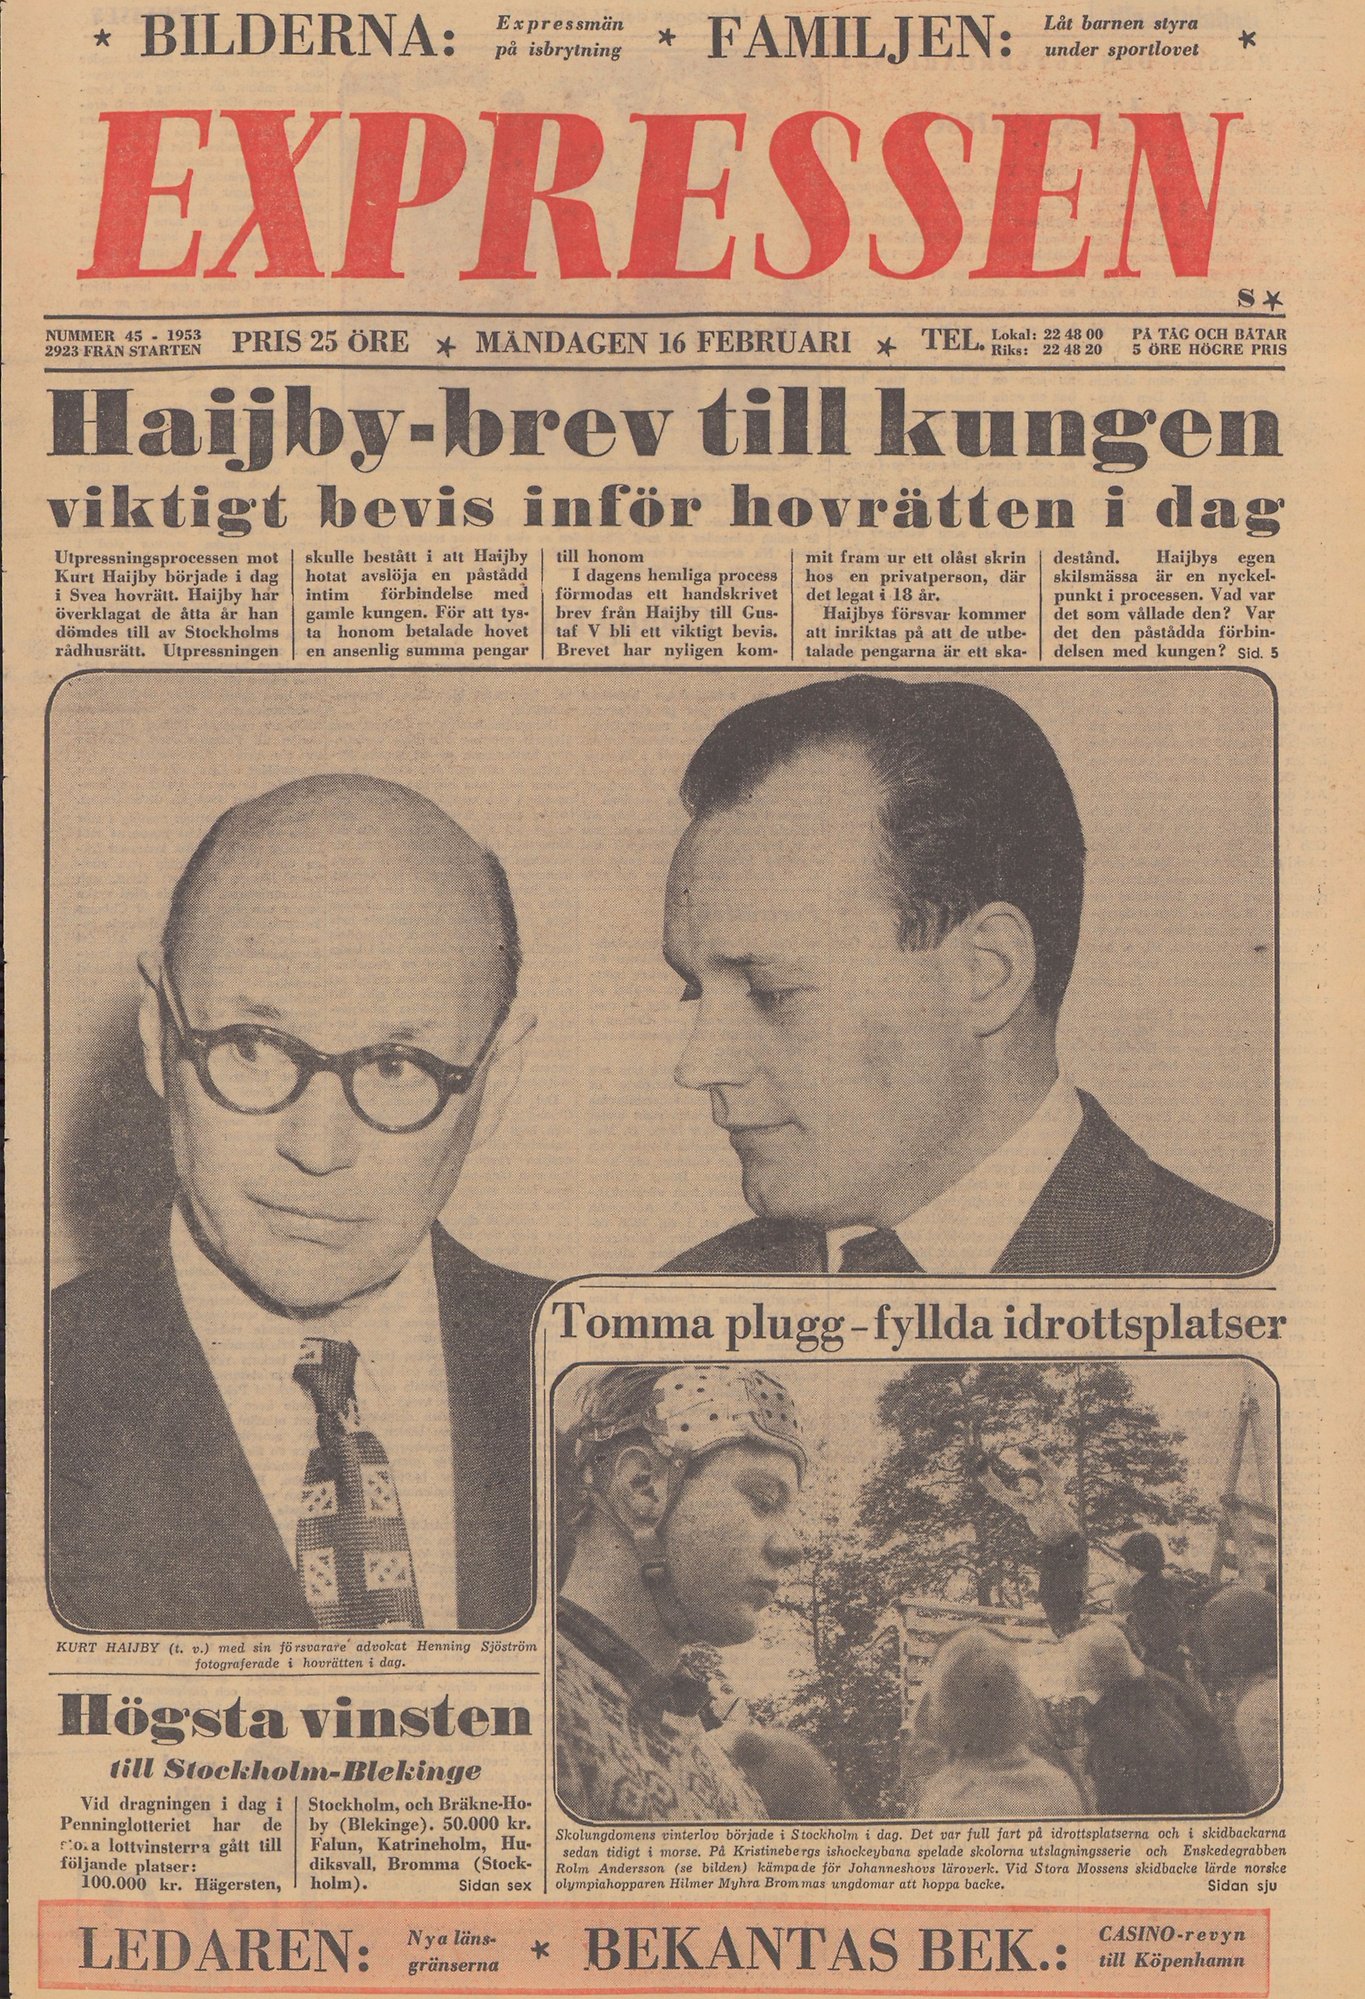 Tunnhårig Kurt Haijby till vänster med runda glasögon, kostym och slips. Till höger kostymklädde advokat Henning Sjöström